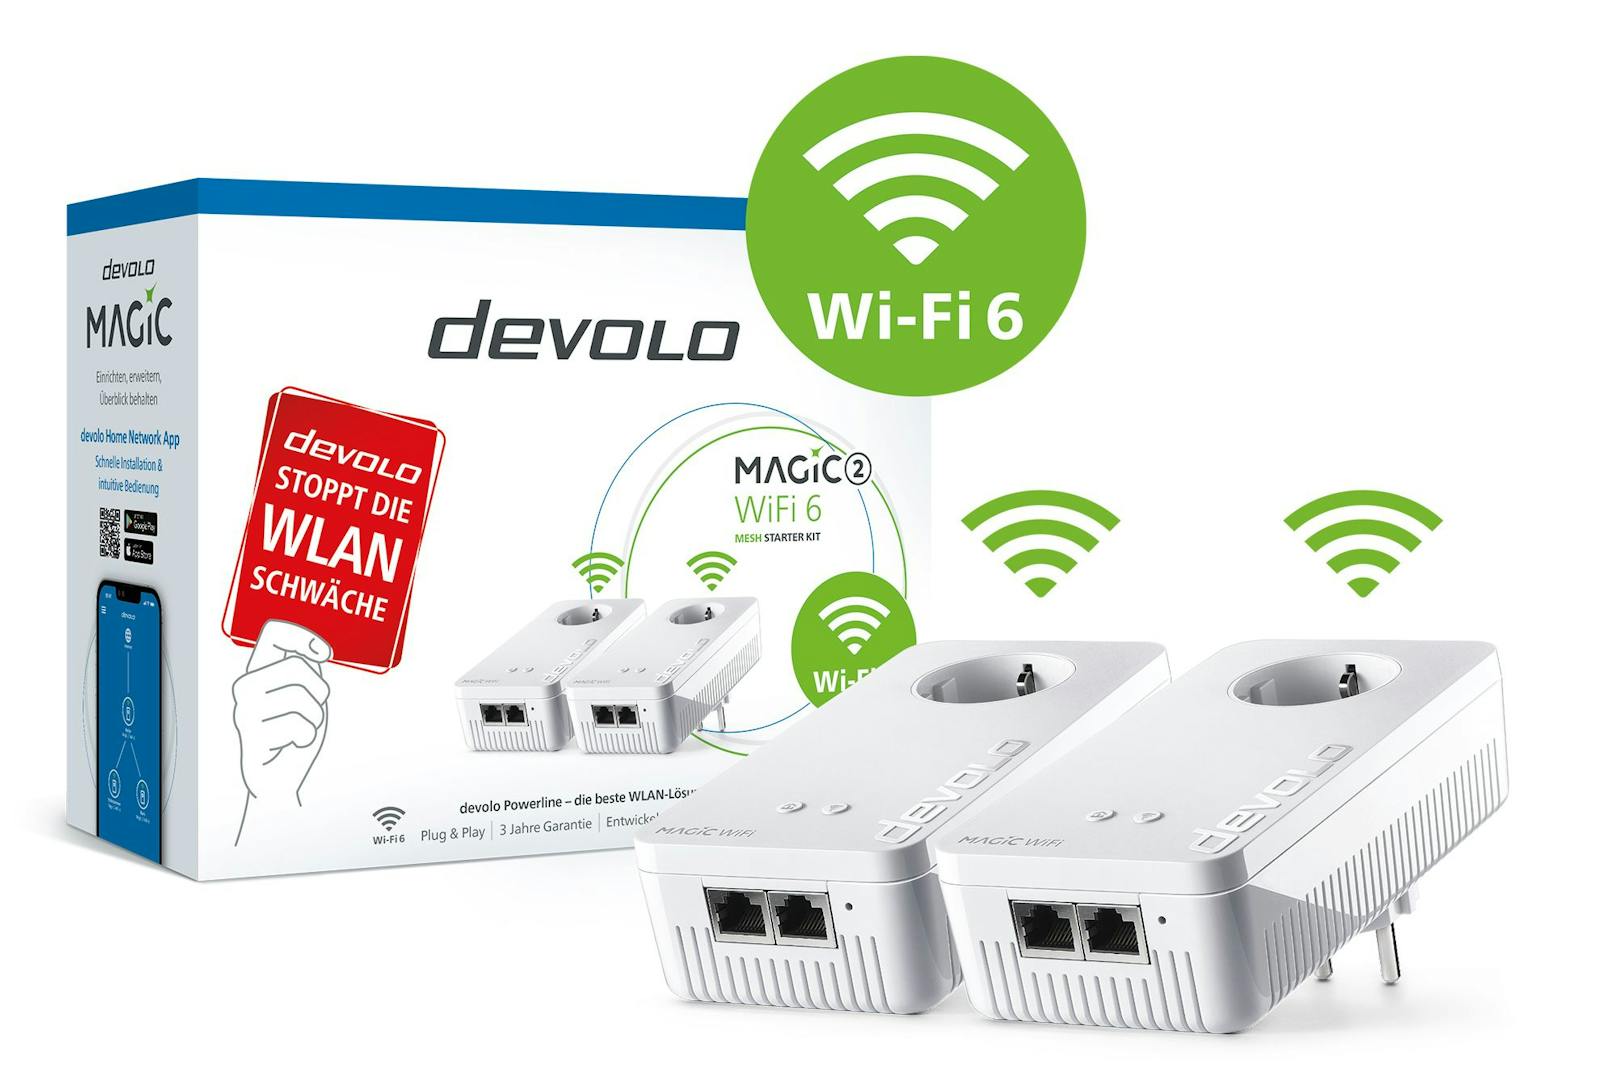 devolo Magic 2 WiFi 6 Mesh ist ab sofort in zwei verschiedenen Varianten verfügbar.